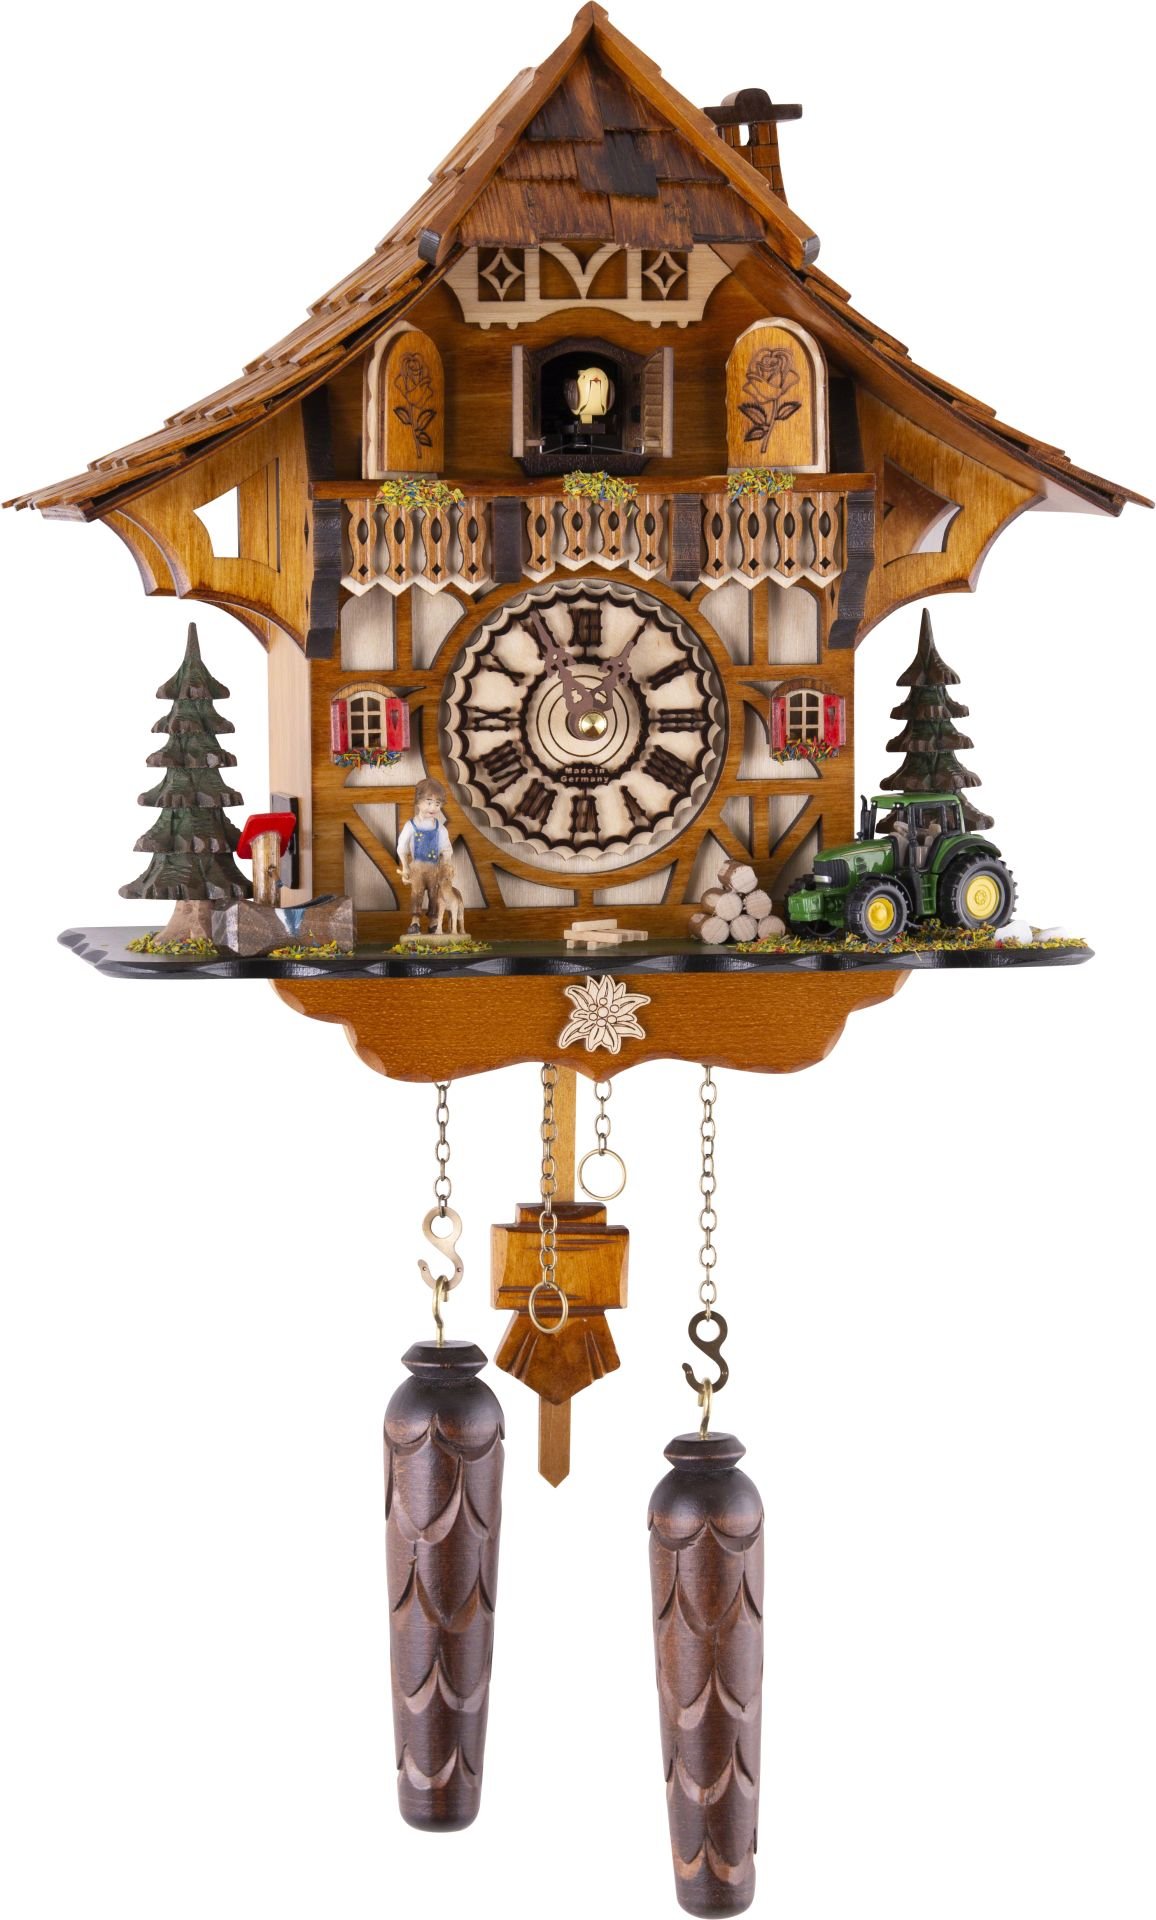 Kuckucksuhr Chalet-Stil Quarz-Uhrwerk 30cm von Trenkle Uhren